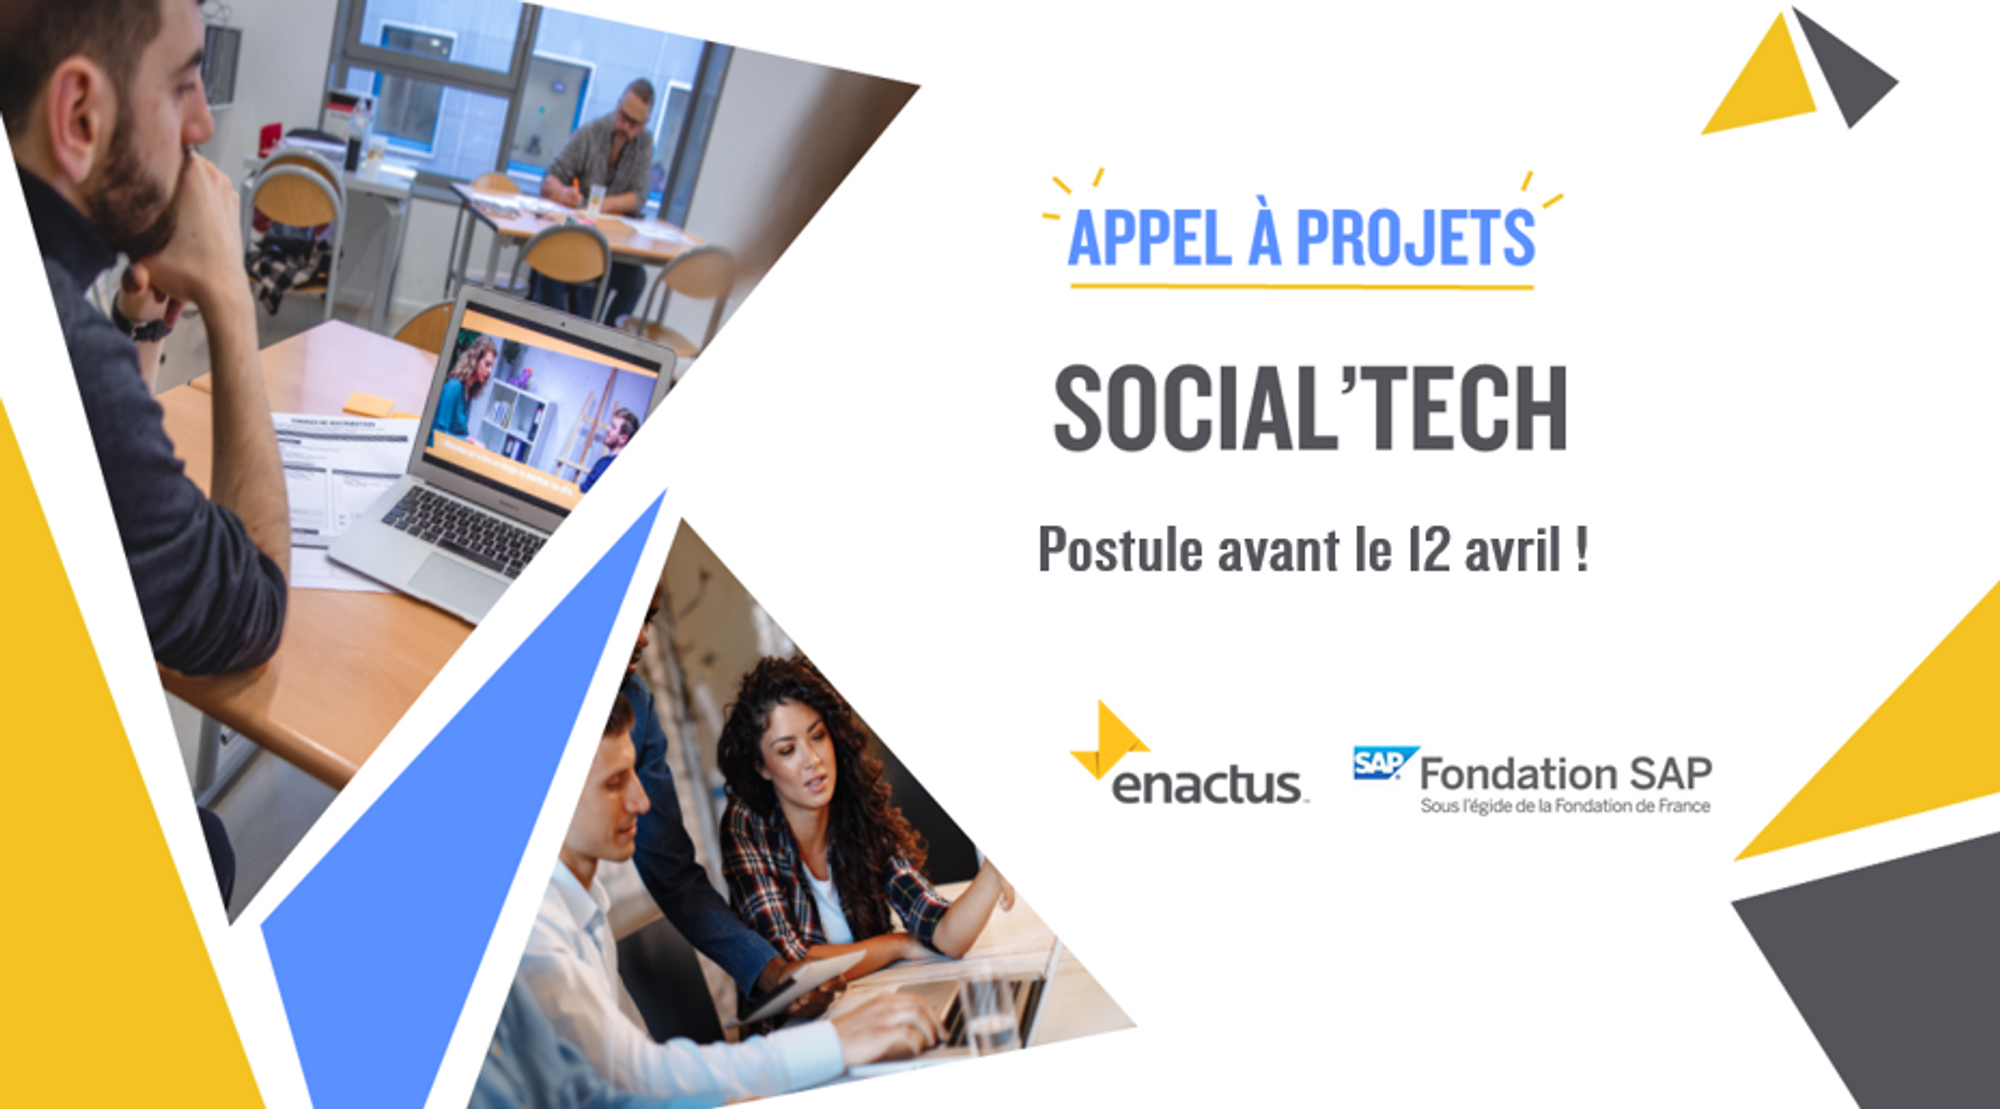 Appel à Projets: "Social’Tech" - Enactus & Fondation SAP 